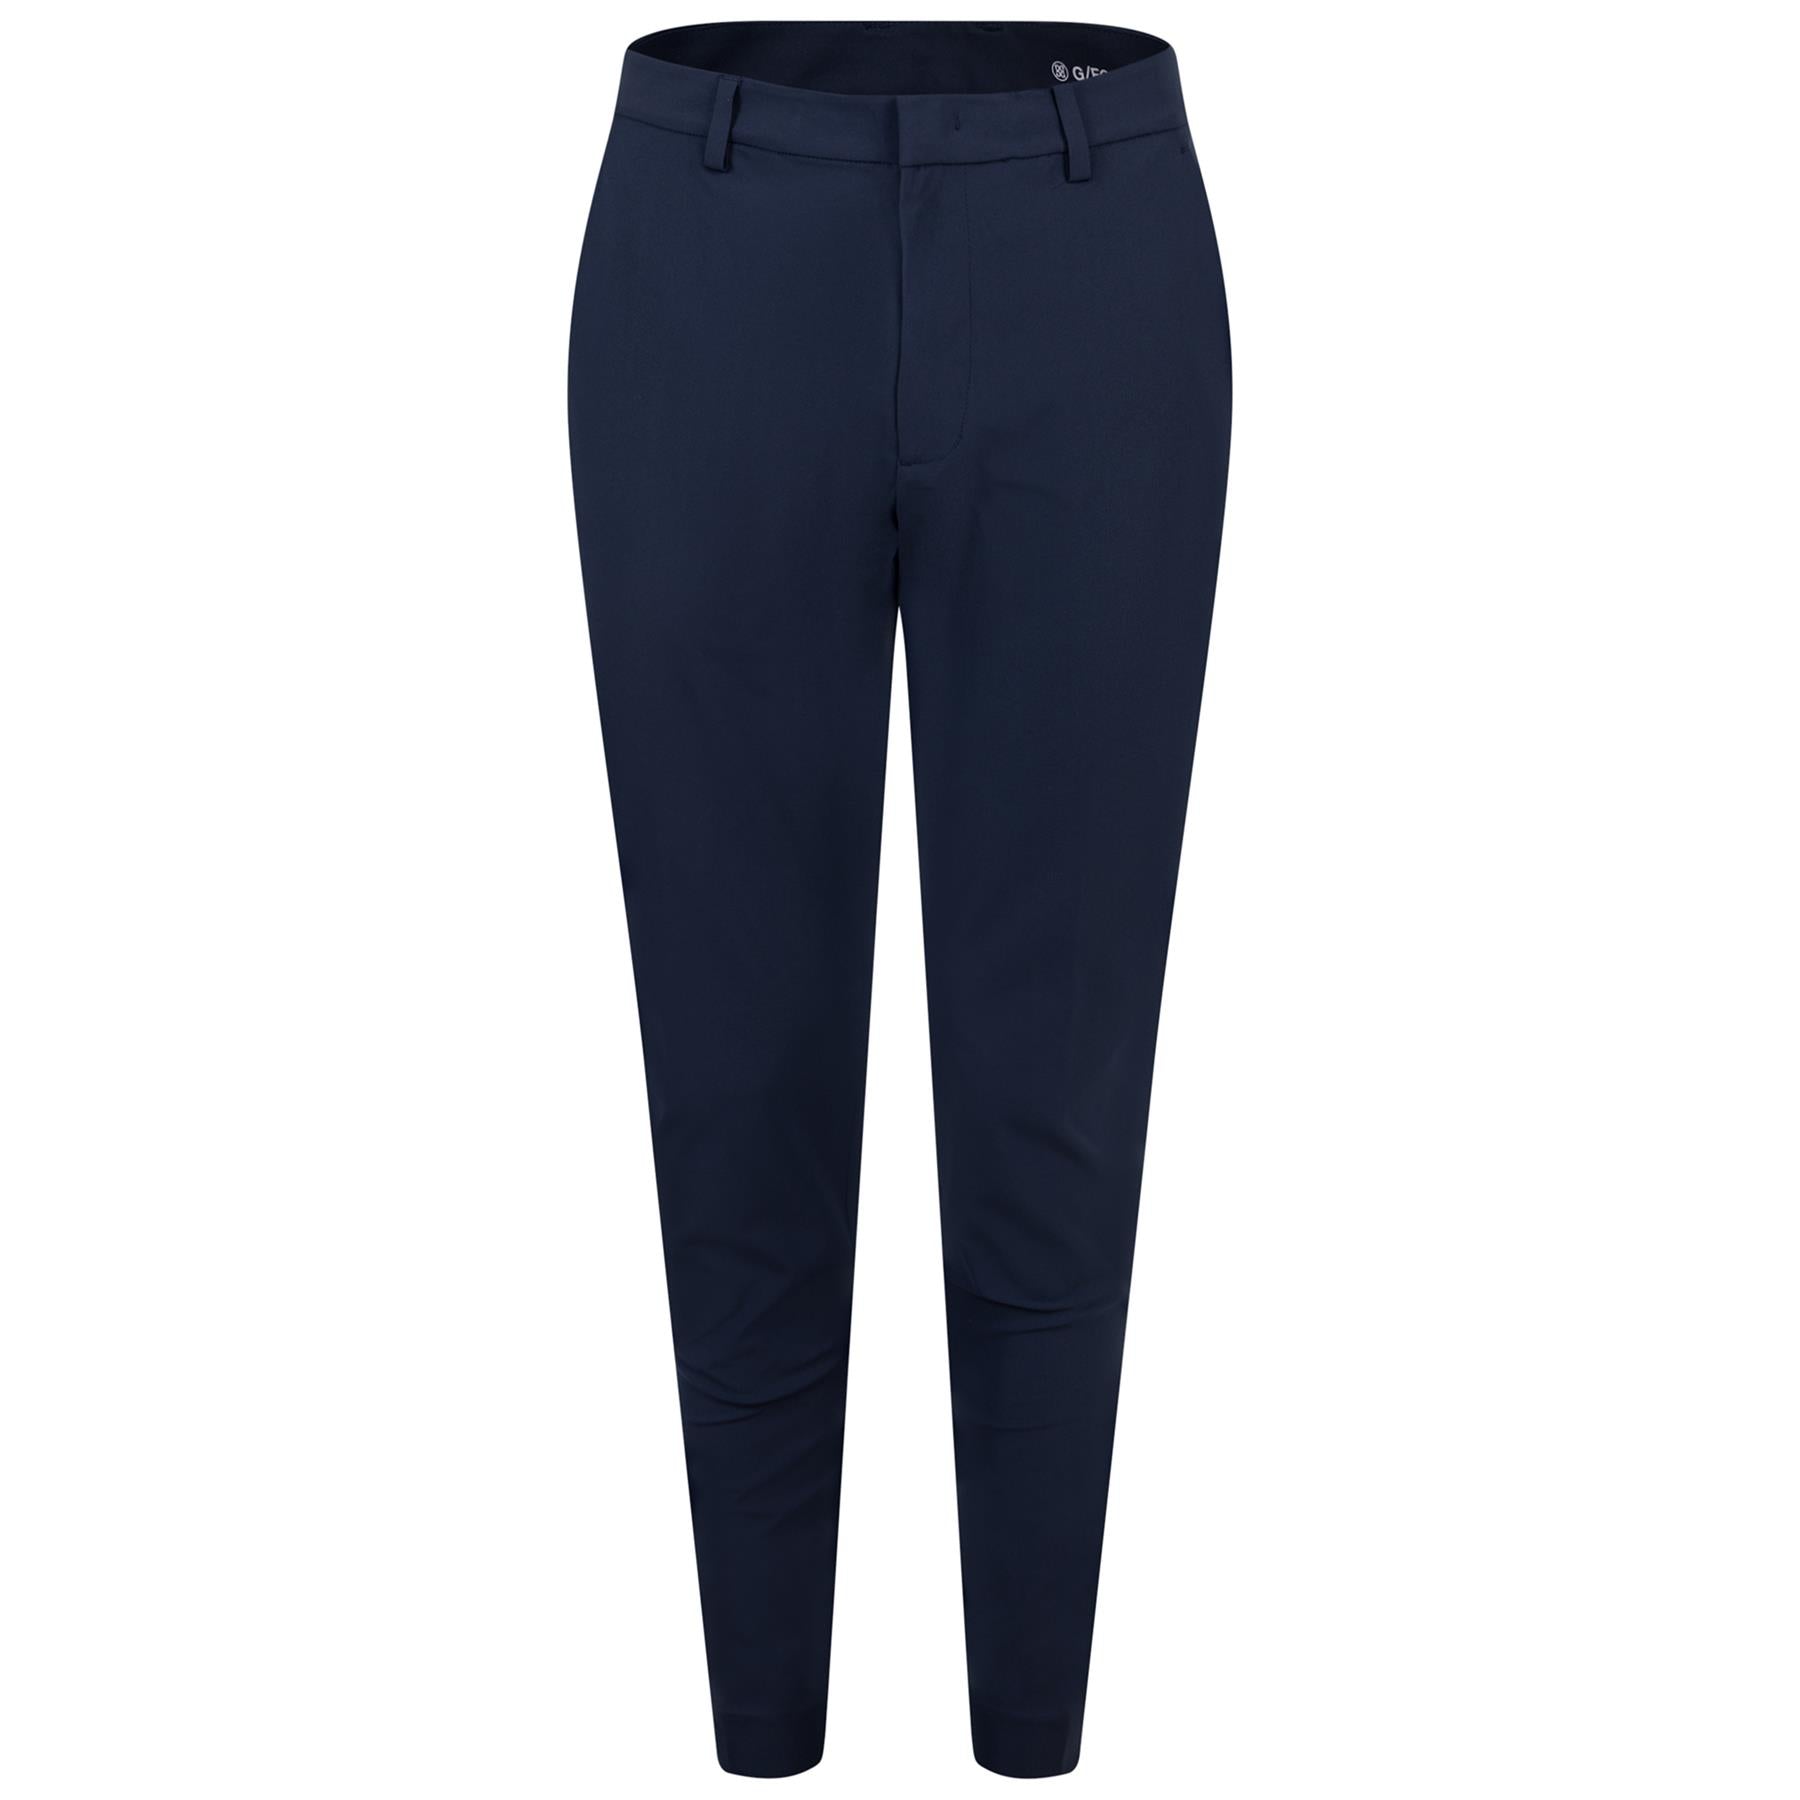 SWEATY BETTY TWILIGHT 7/8 Trousers Size XS £44.99 - PicClick UK